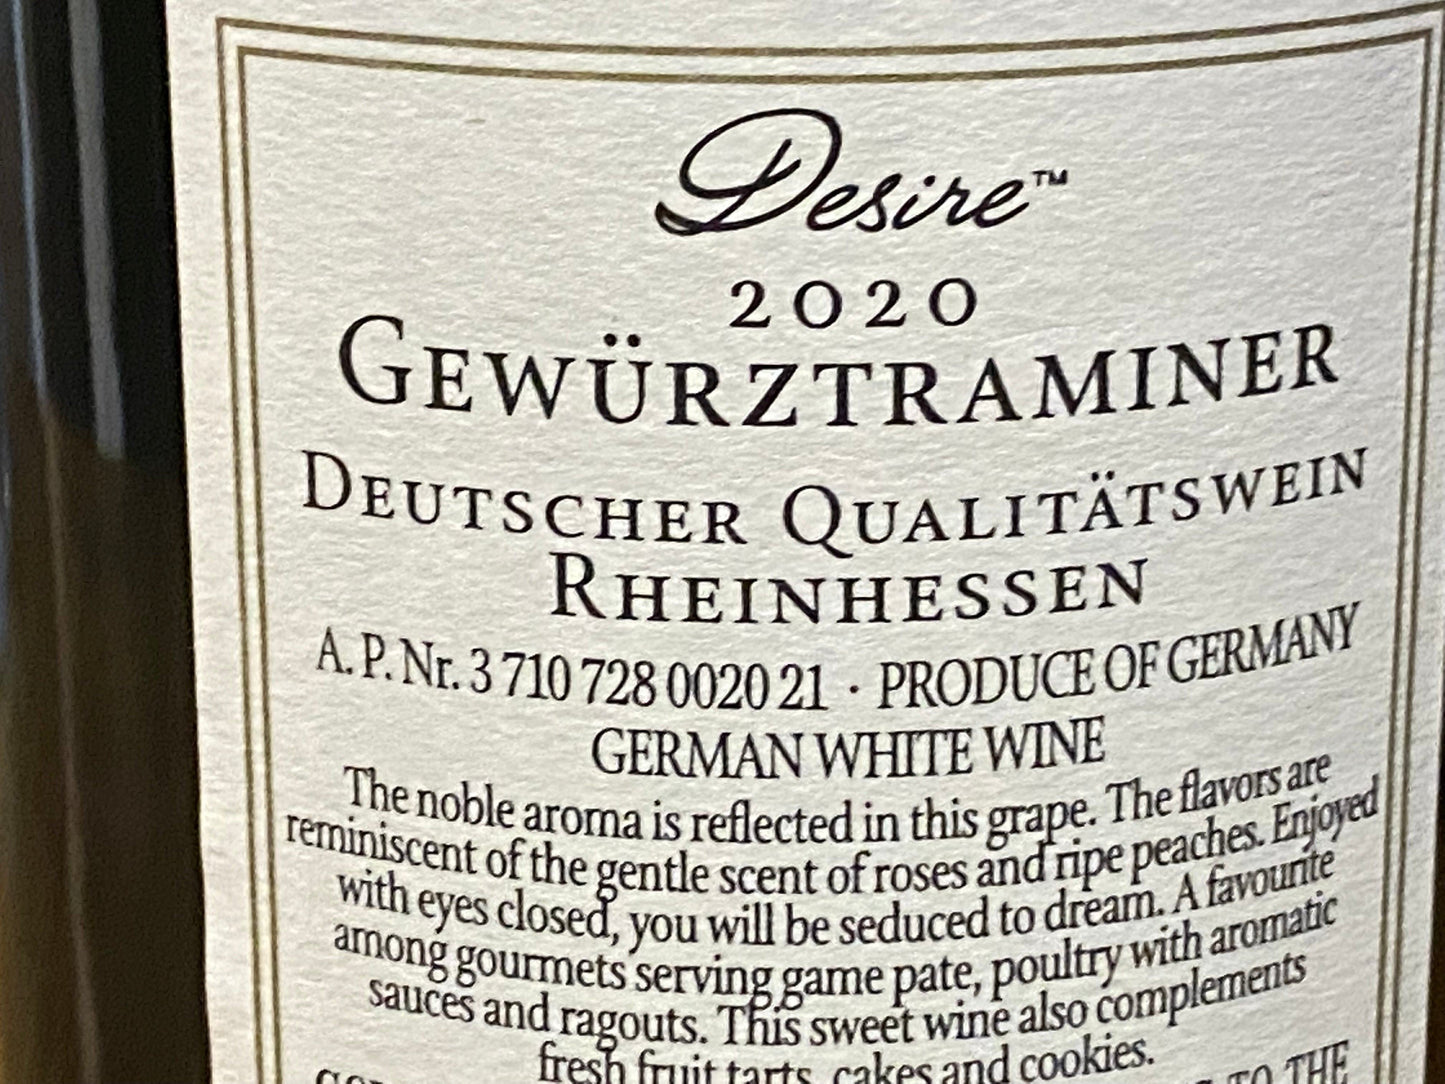 Desire Gewurstraminer “2020” - Your Wine Stop   -   Denver, NC